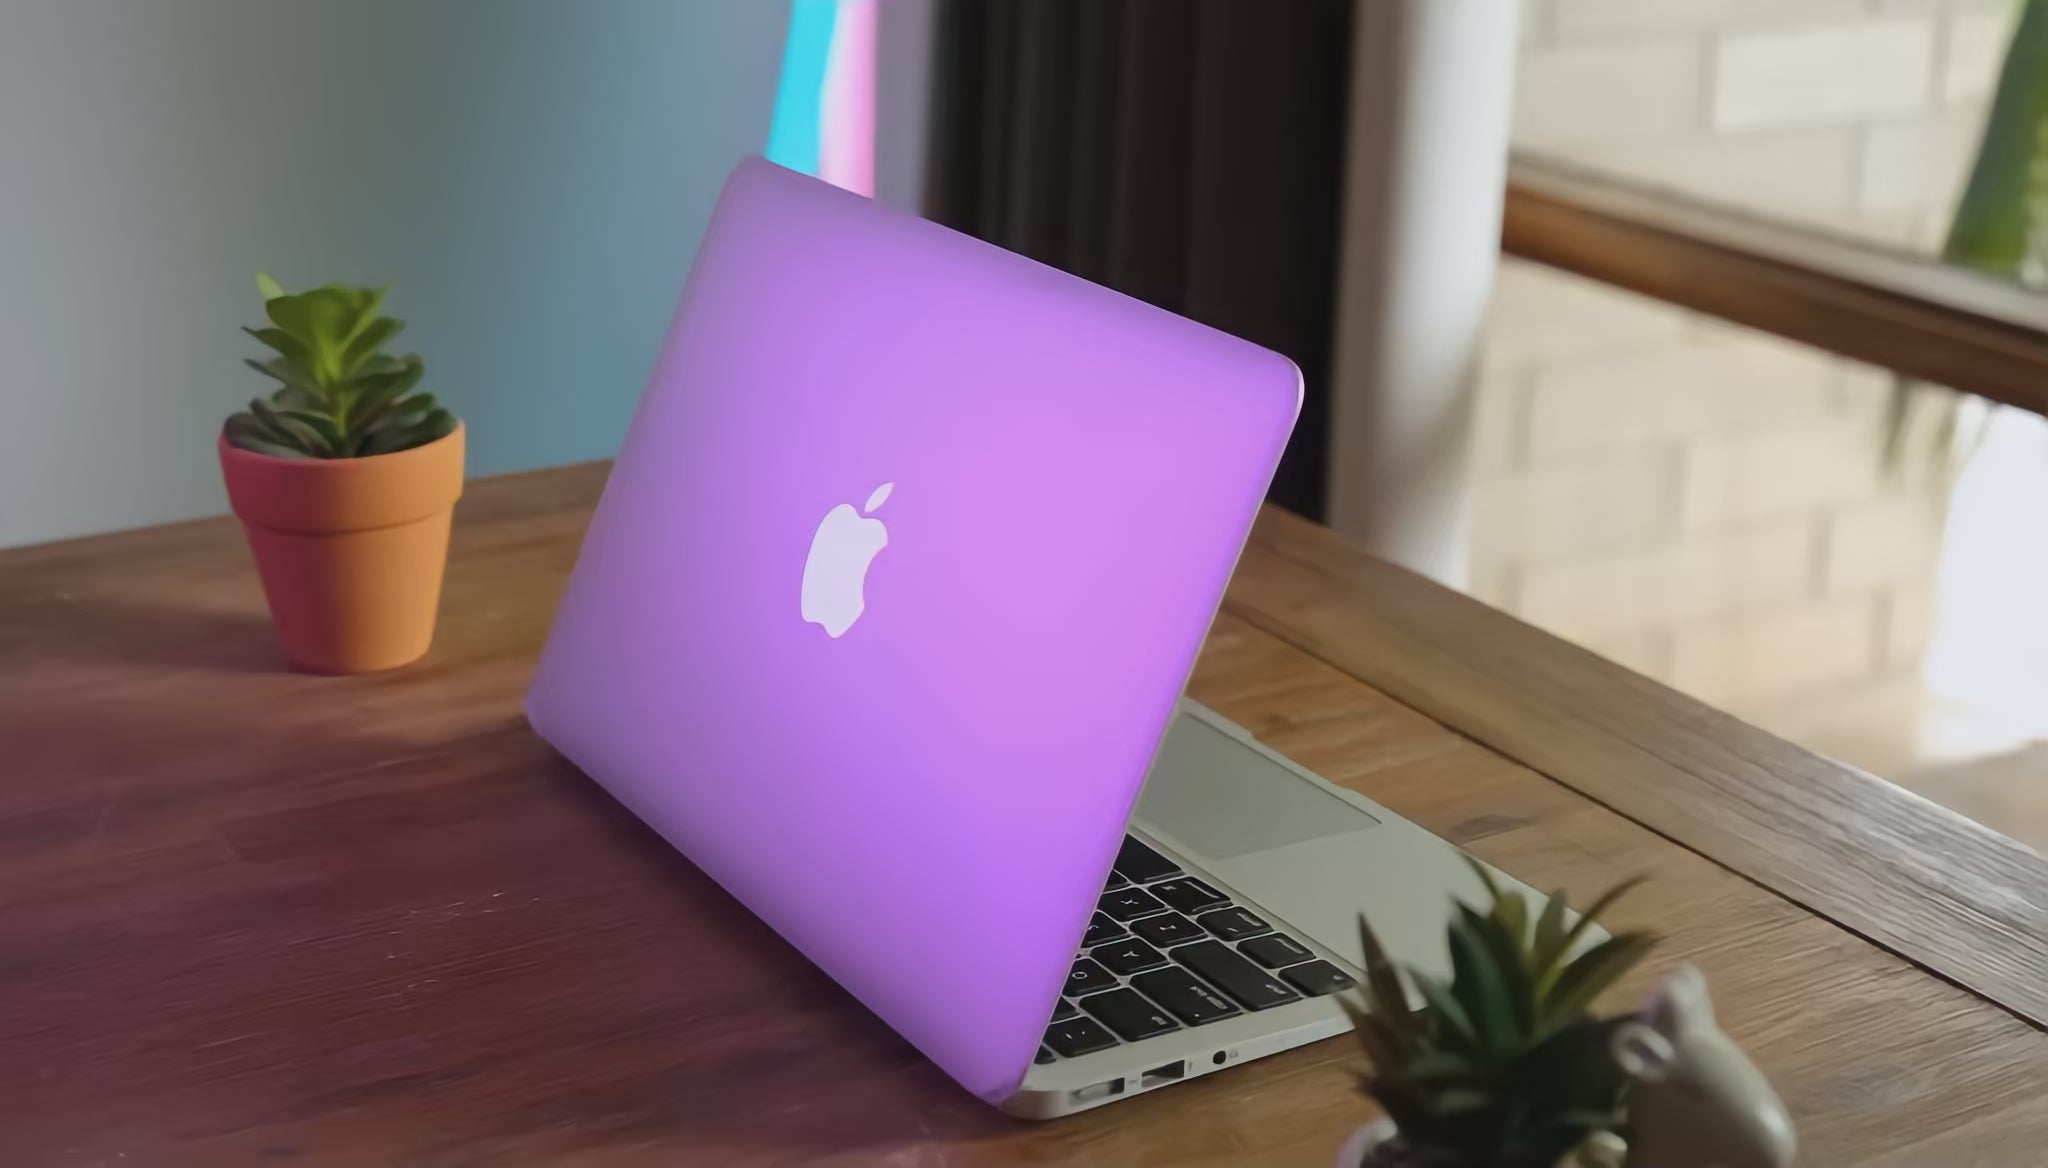 MacBook Air 13-inch A1466 Core i7 2.2Ghz (2015)